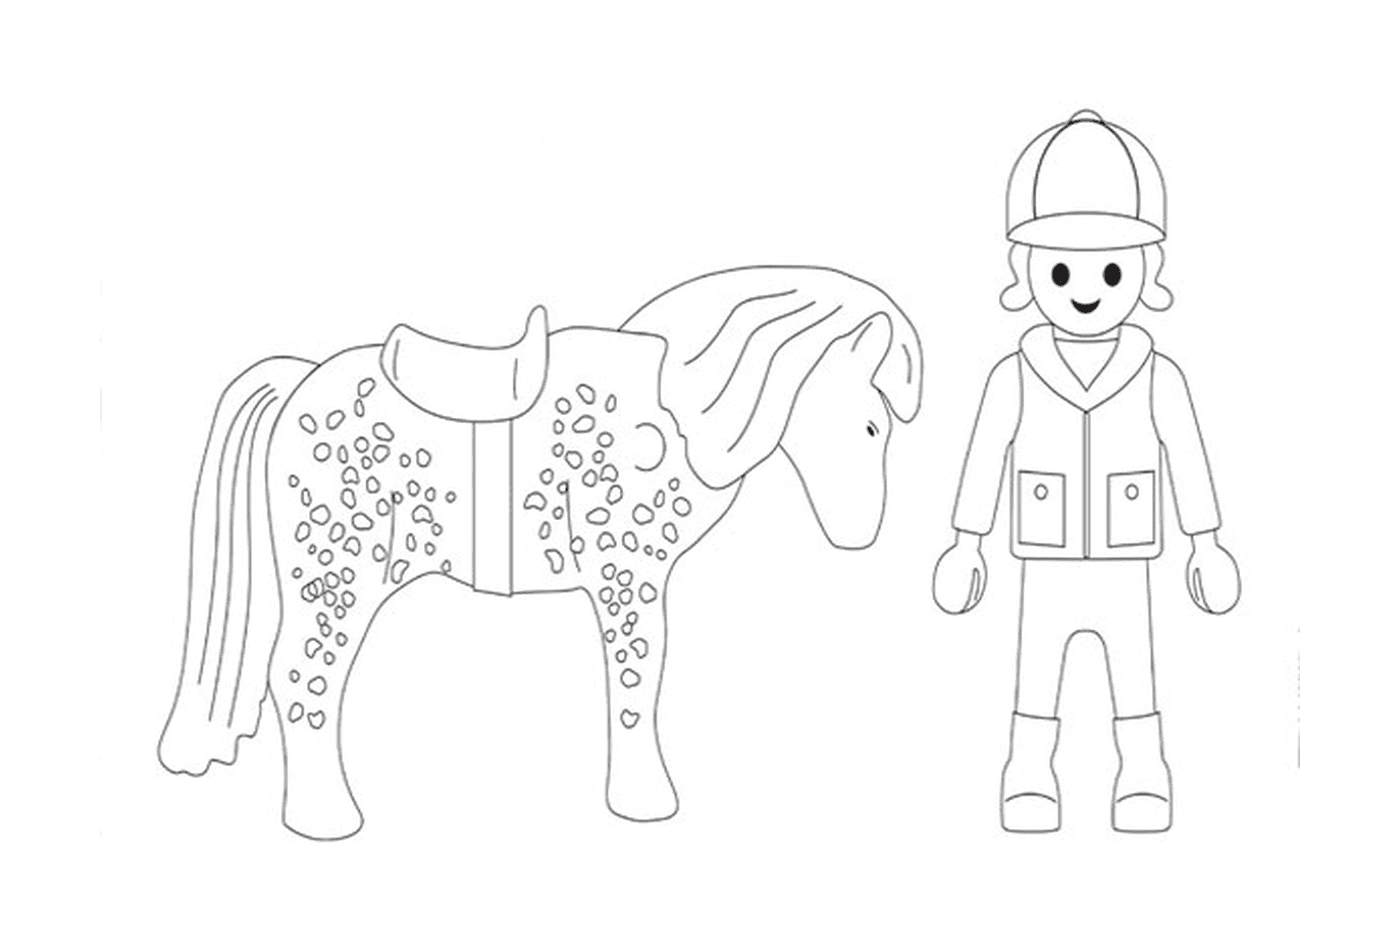 Playmobil Pferd - Bild einer Person und eines Pferdes